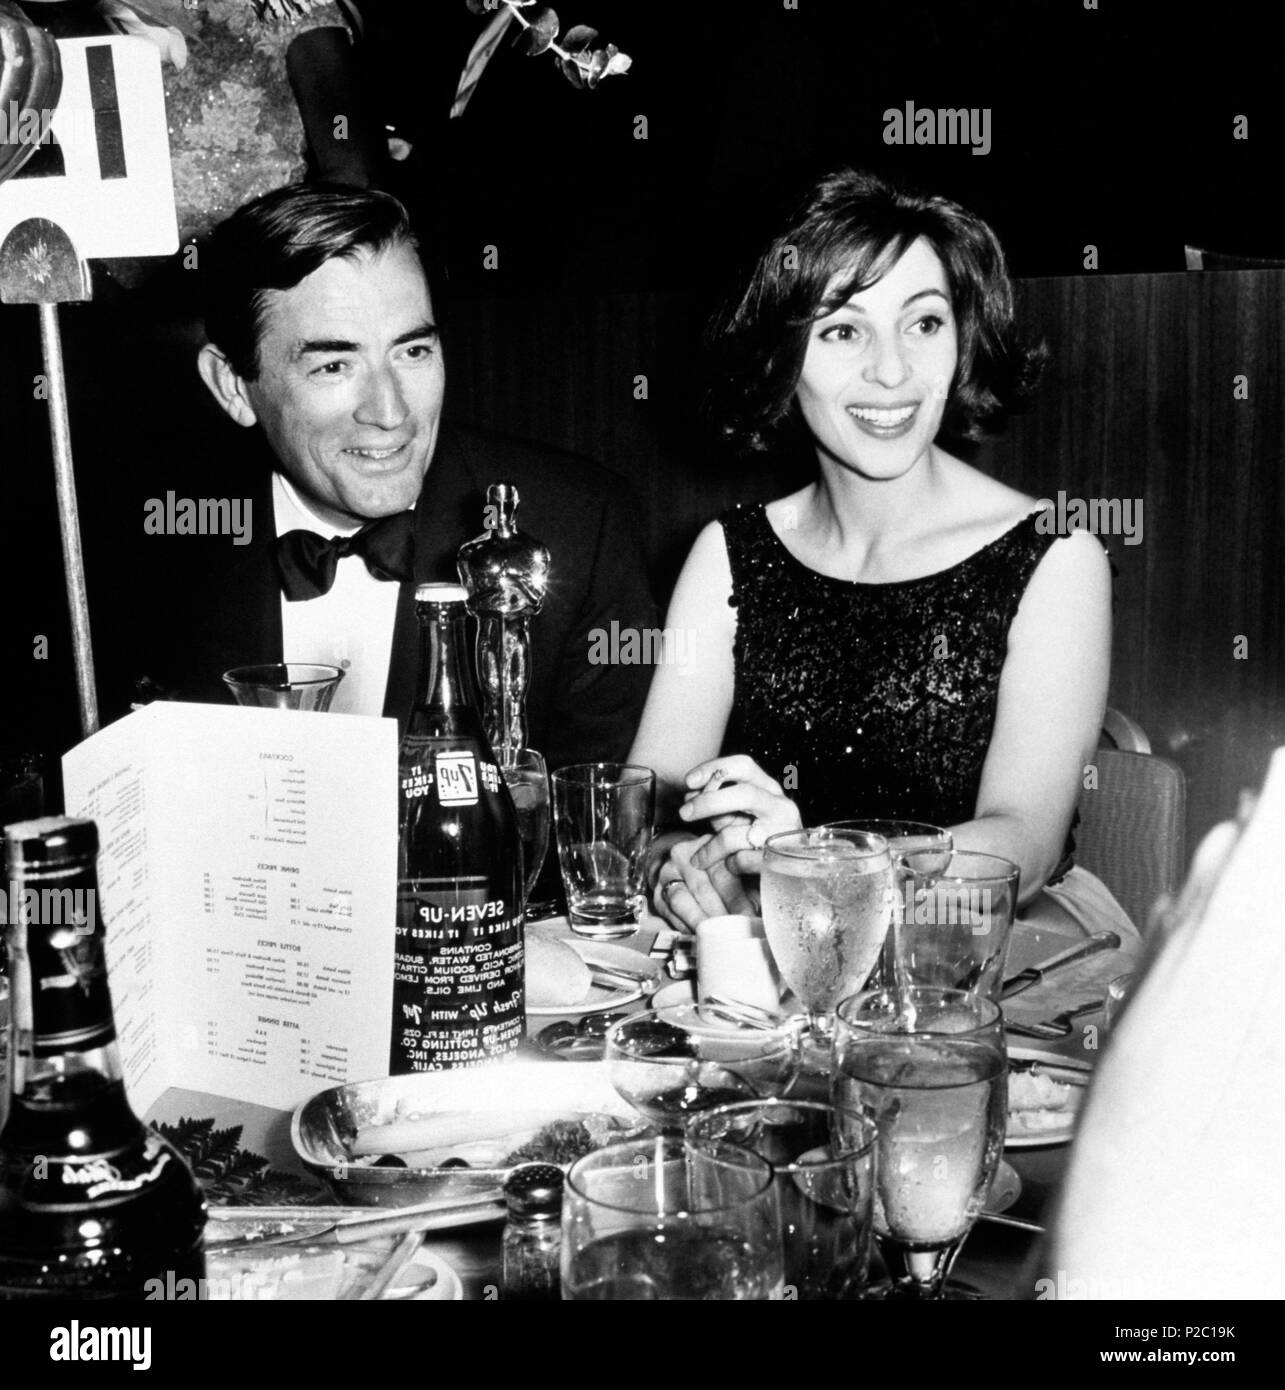 Description : La 35e Academy Awards / 1963. Gregory Peck est assis avec sa femme Véronique et il a remporté l'Oscar du meilleur acteur dans "To Kill a Mockingbird".. Film Original Titre : HISTOIRE DU CINÉMA : OSCARS. Titre en anglais : HISTOIRE DU CINÉMA : OSCARS. Année : 1963. Stars : Gregory Peck. Banque D'Images